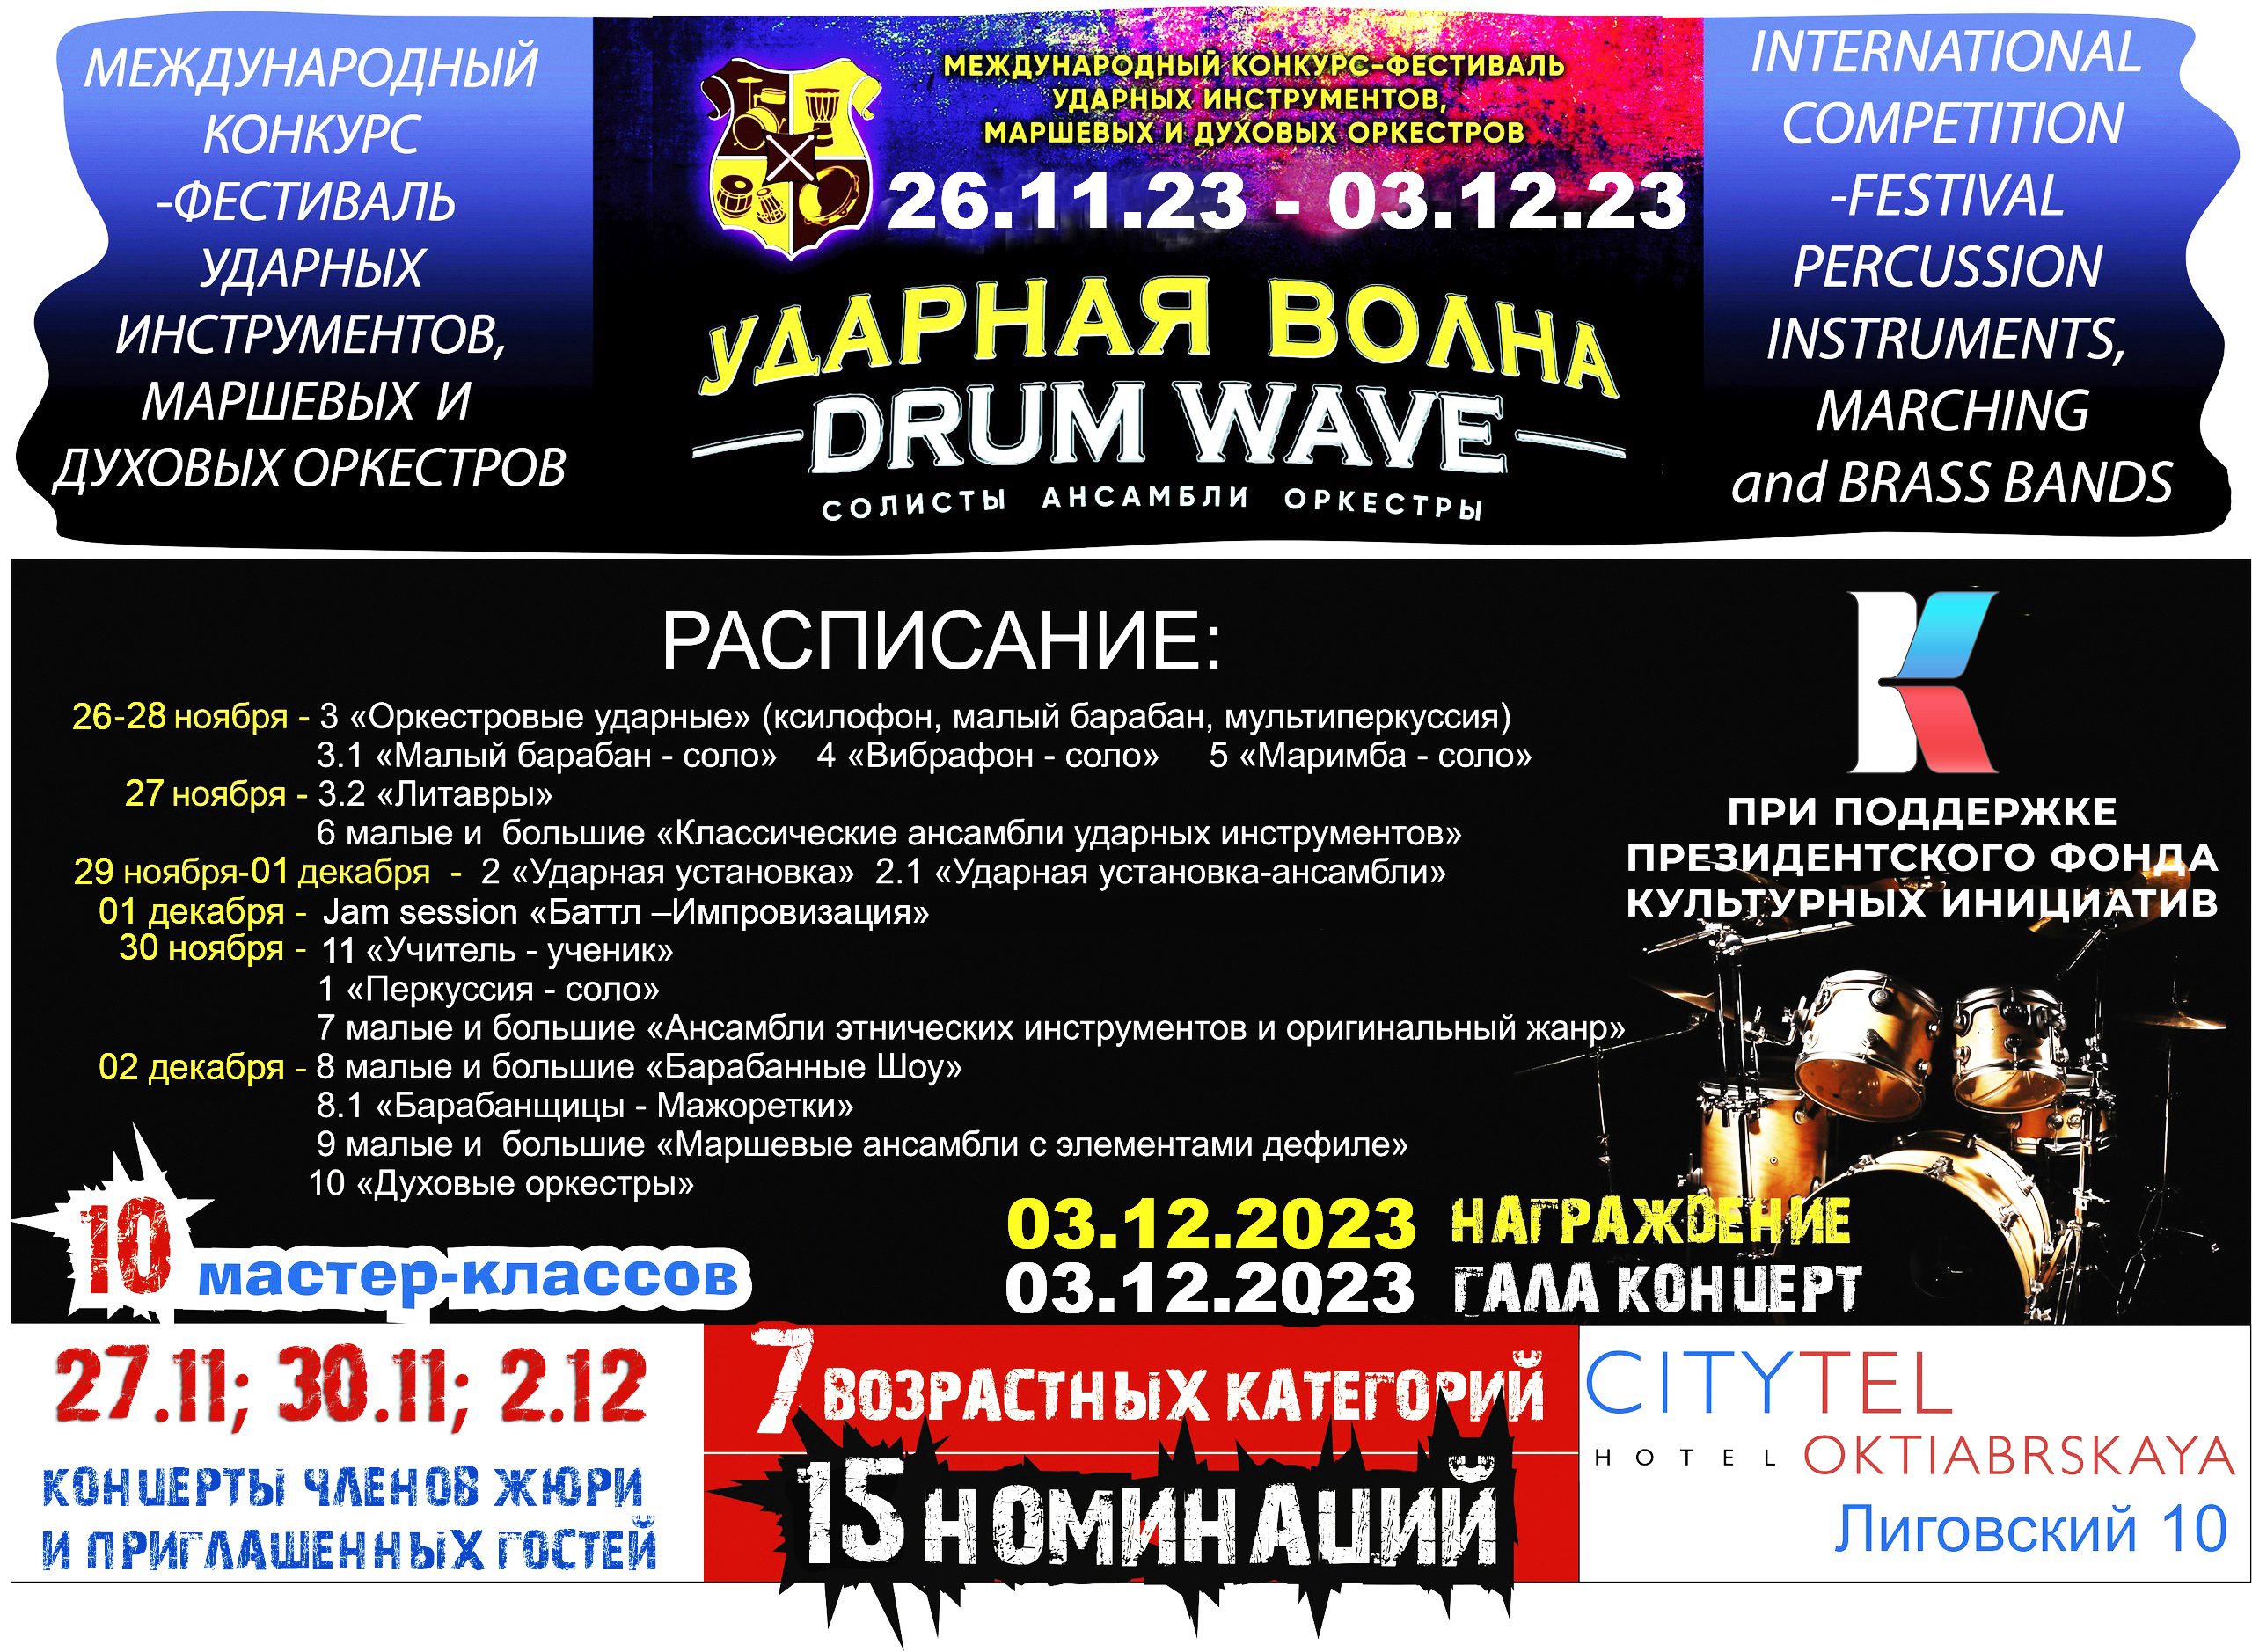 Программа мастер-классов в Музыкальном училище им. М.А. Балакирева